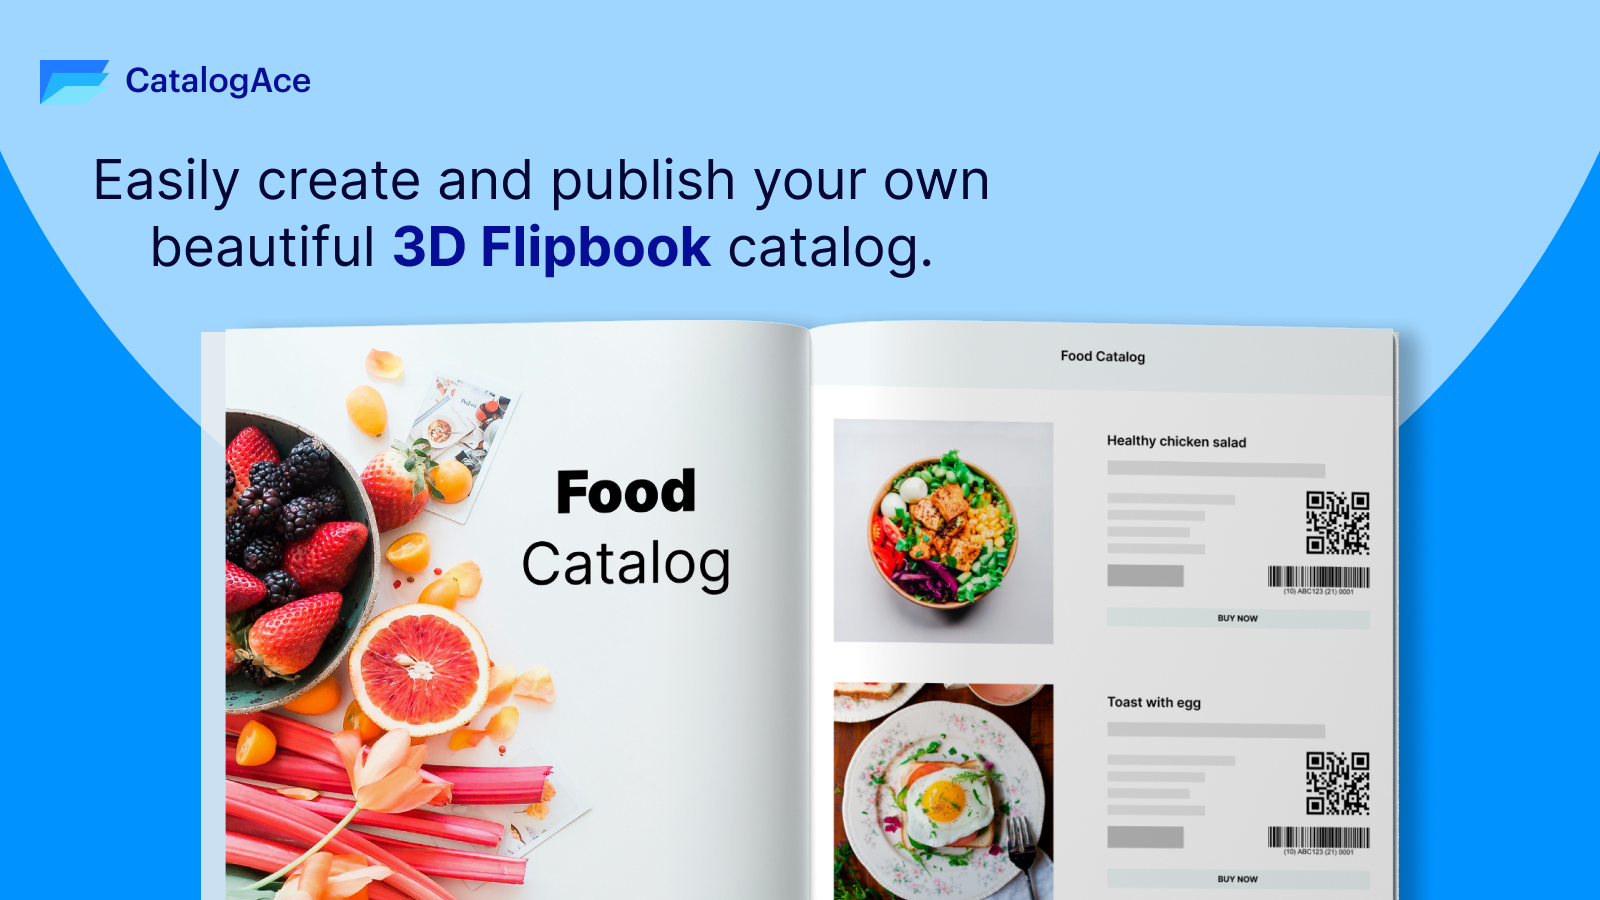 Maak en publiceer eenvoudig uw eigen prachtige 3D Flipbook